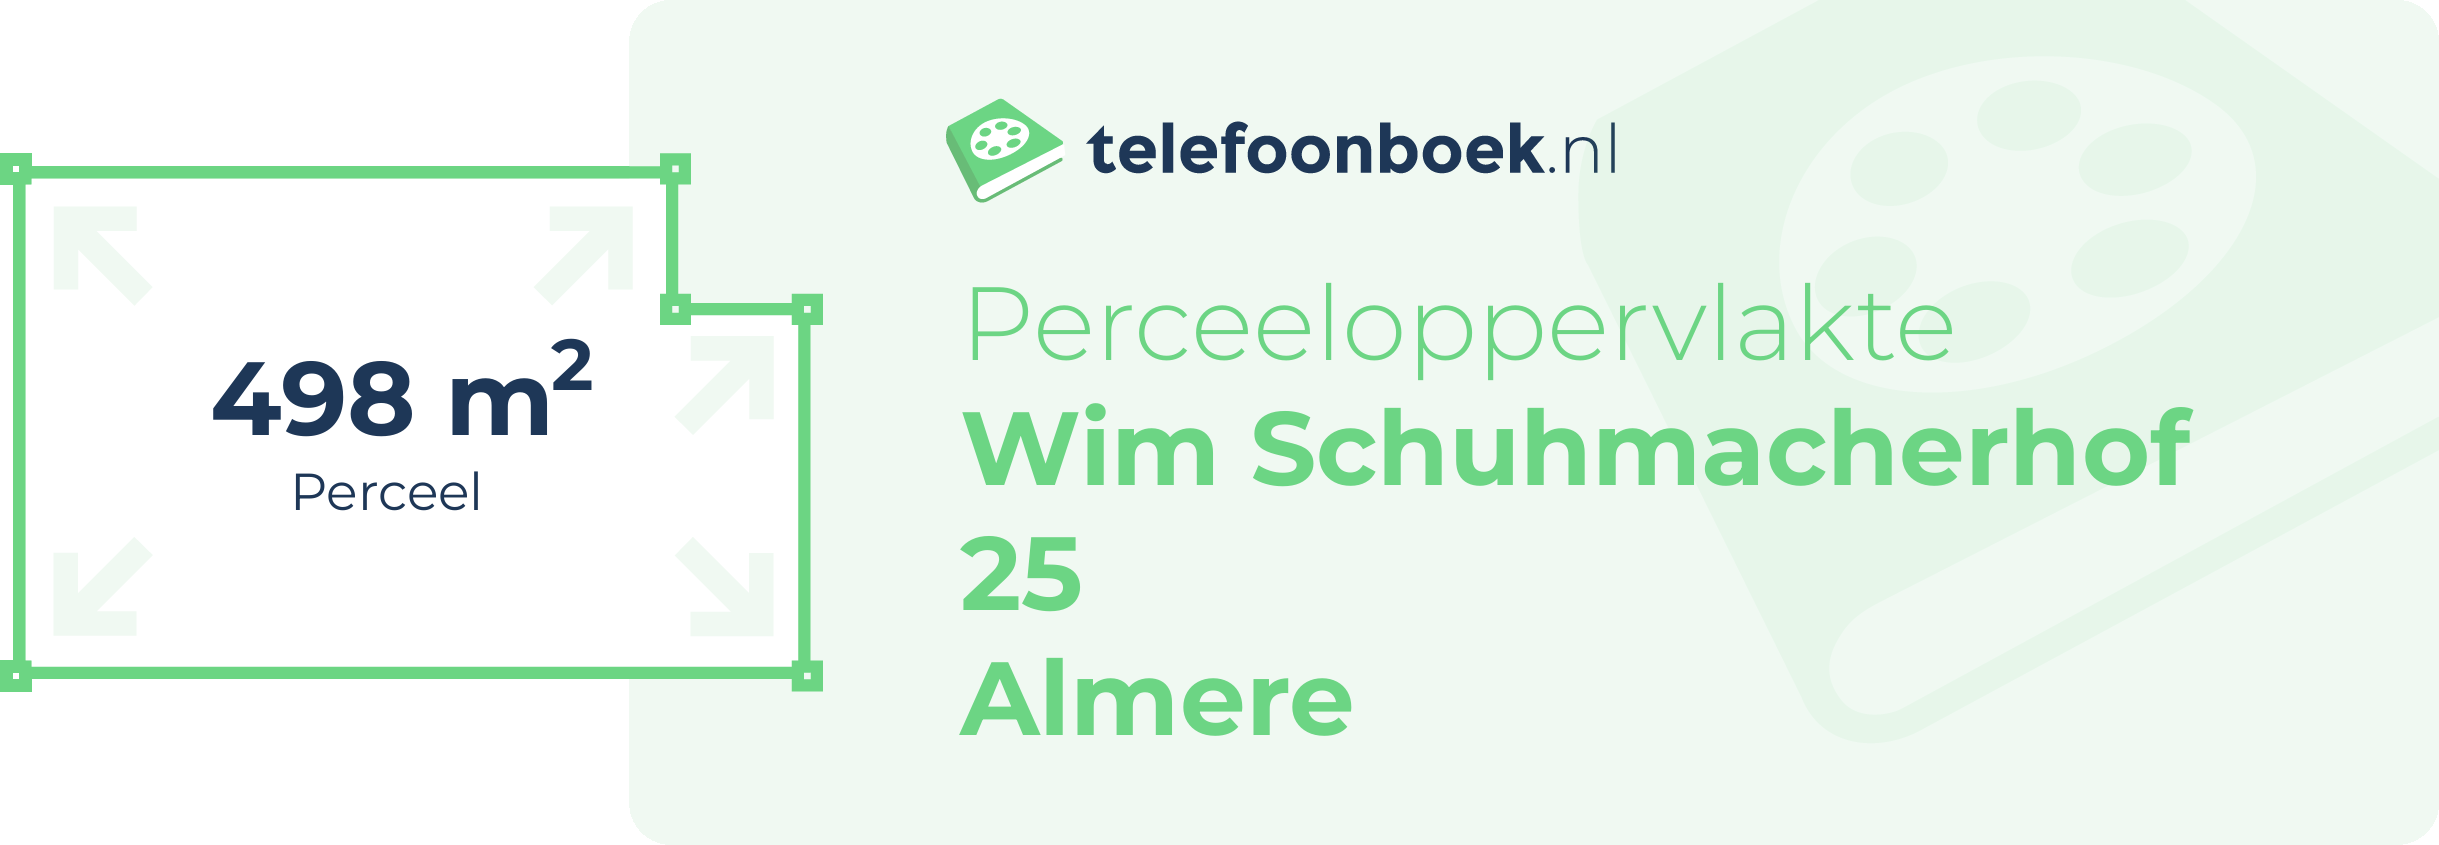 Perceeloppervlakte Wim Schuhmacherhof 25 Almere